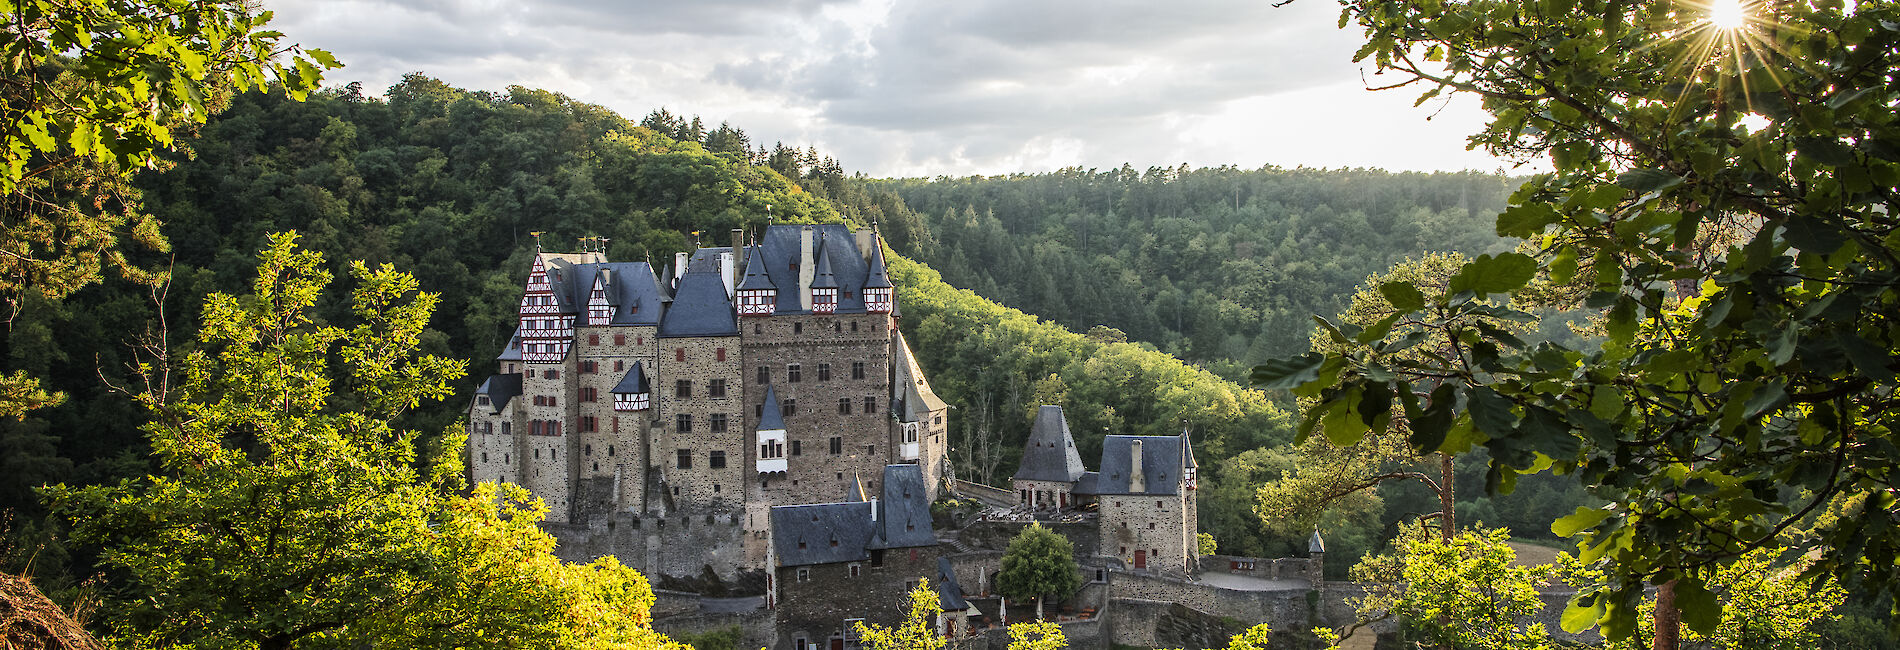 Wierschem: Burg Eltz in der Eifel